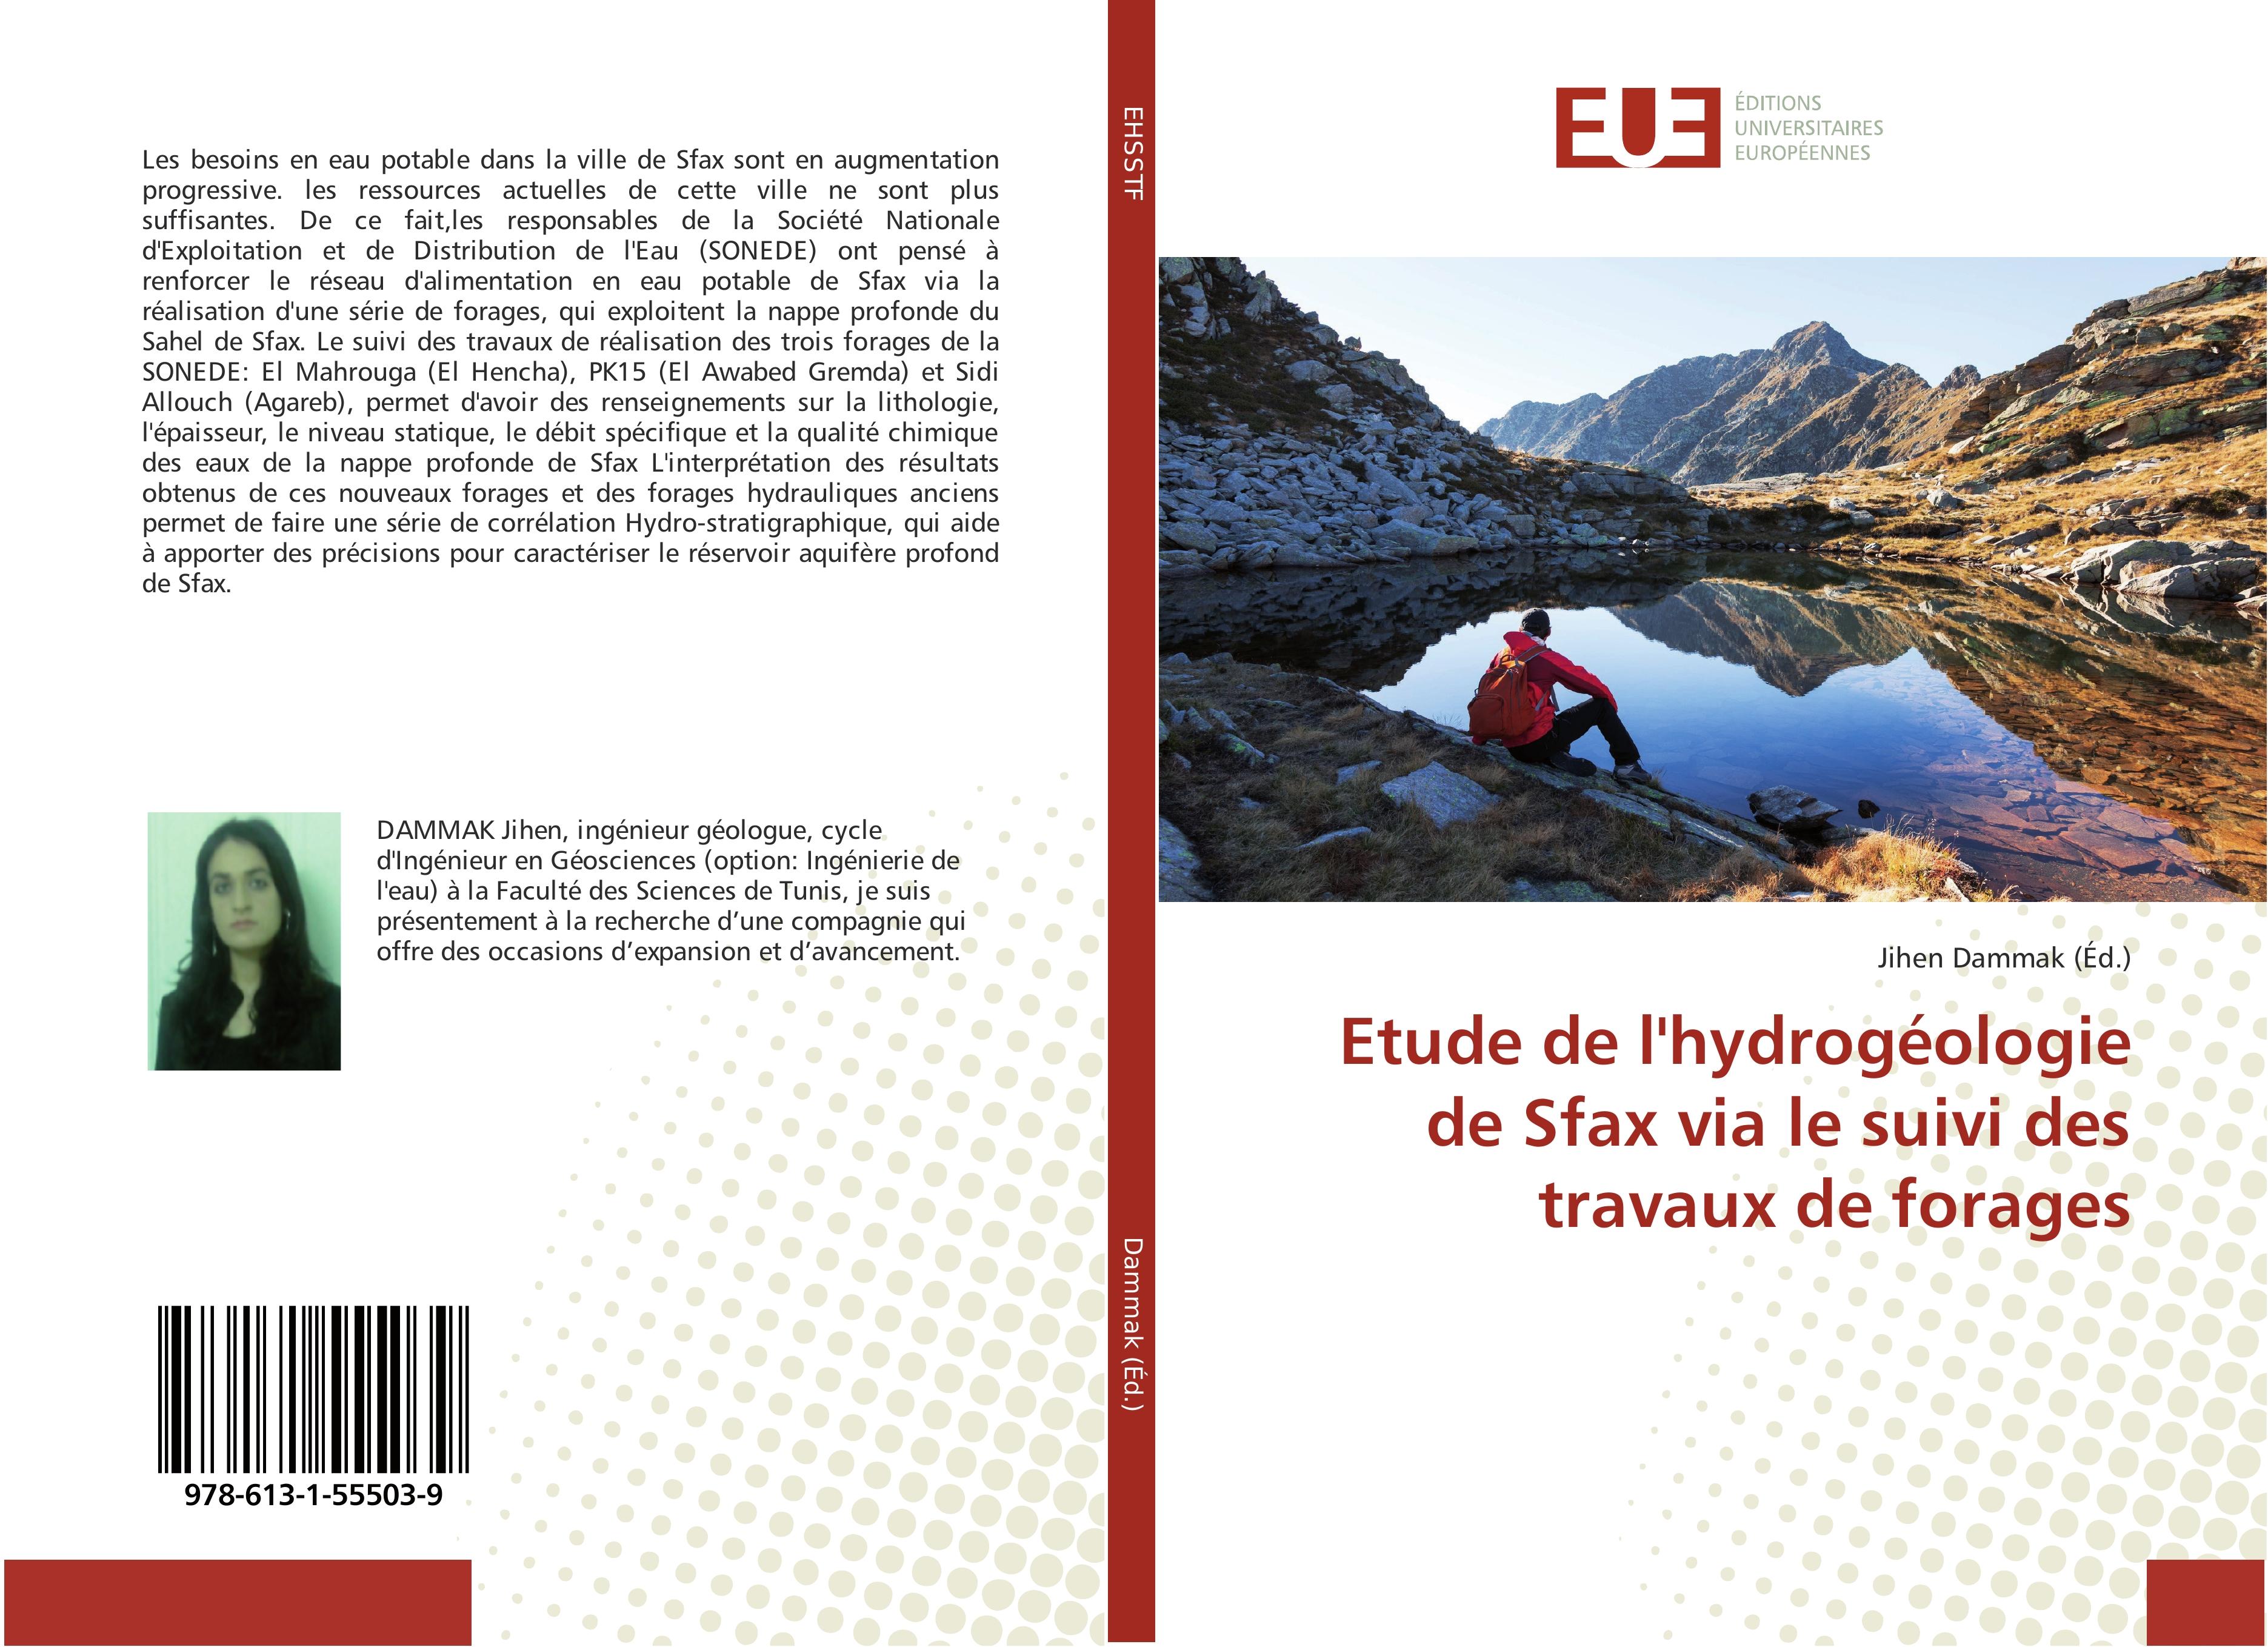 Etude de l hydrogéologie de Sfax via le suivi des travaux de forages - Jihen Dammak